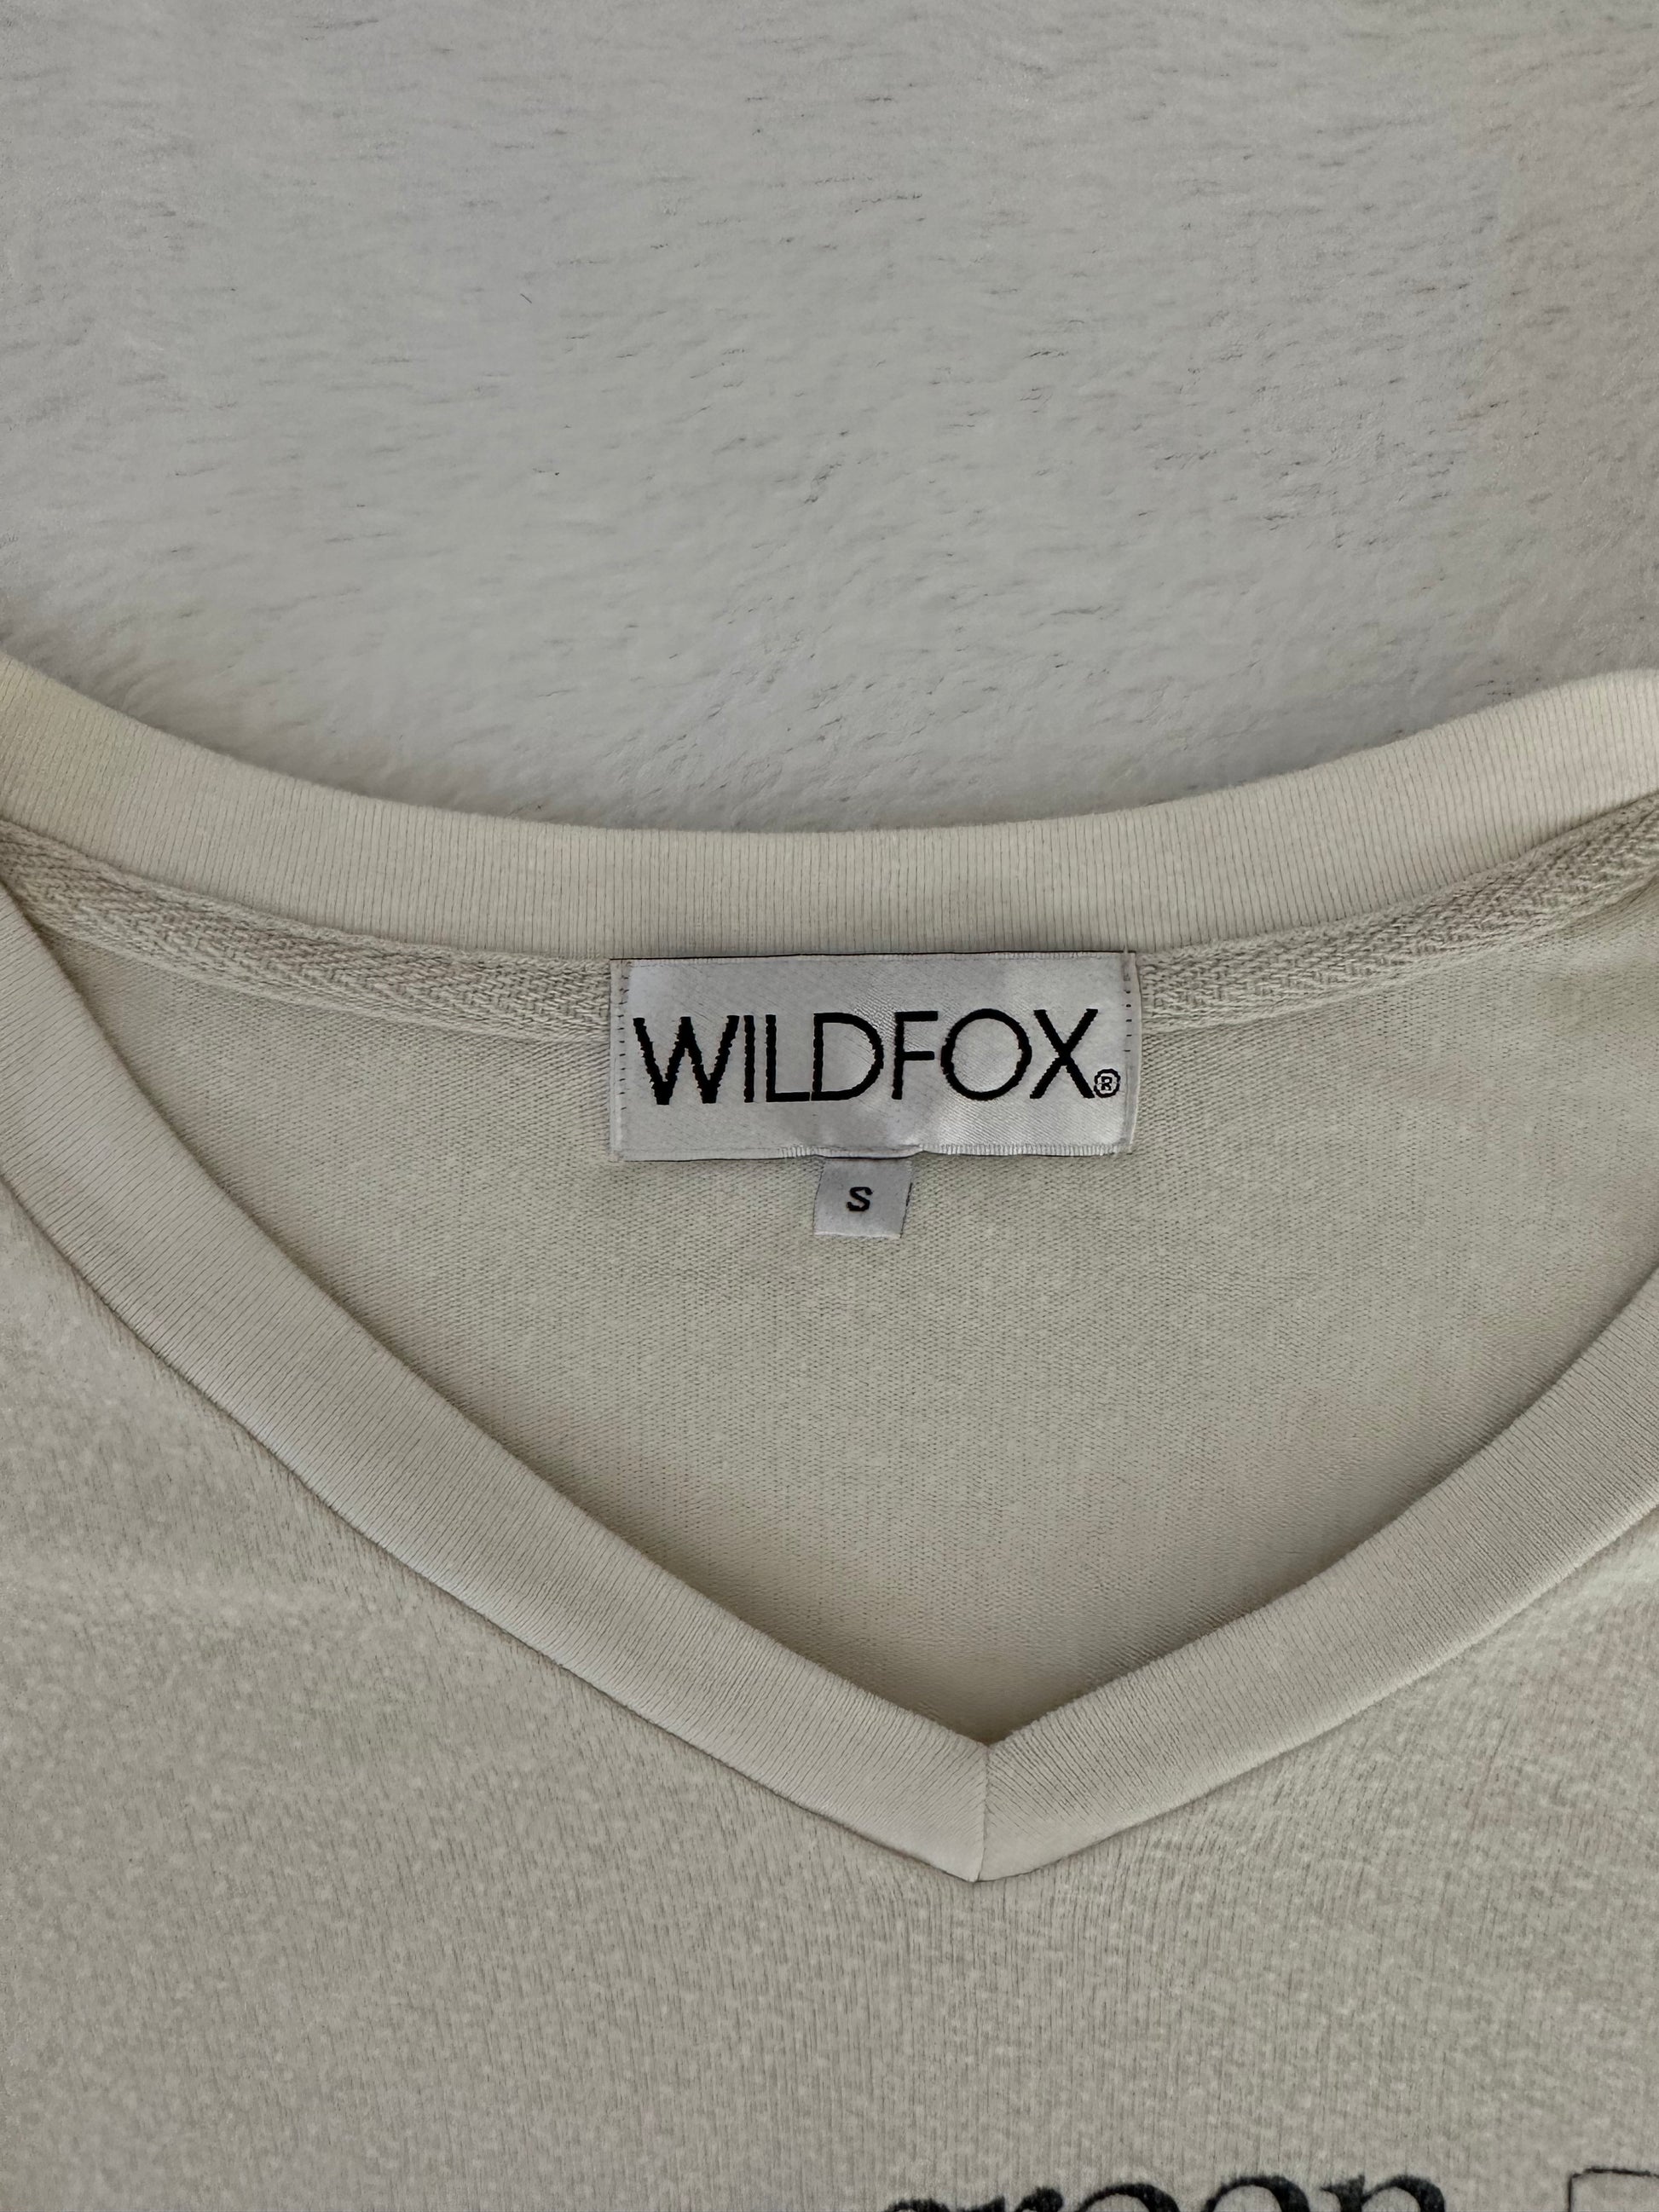 Wild Fox Long Sleeve - Better World Thrift